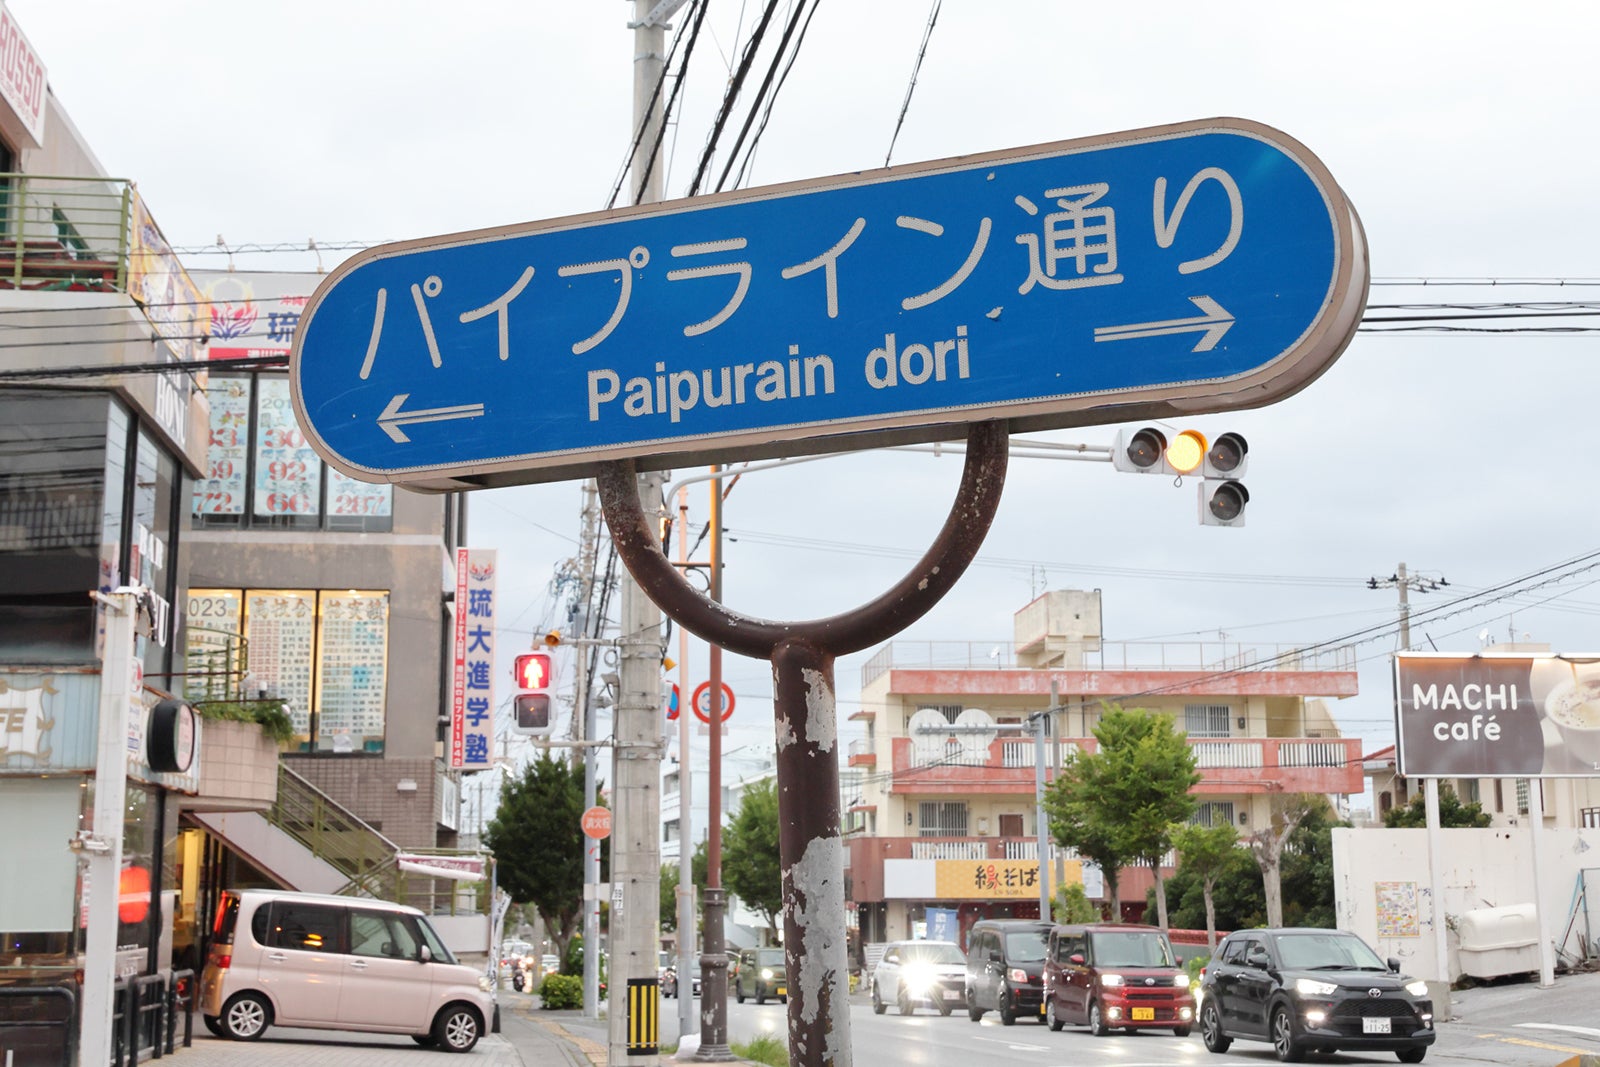 浦添市内で見られる「パイプライン通り」という案内標識